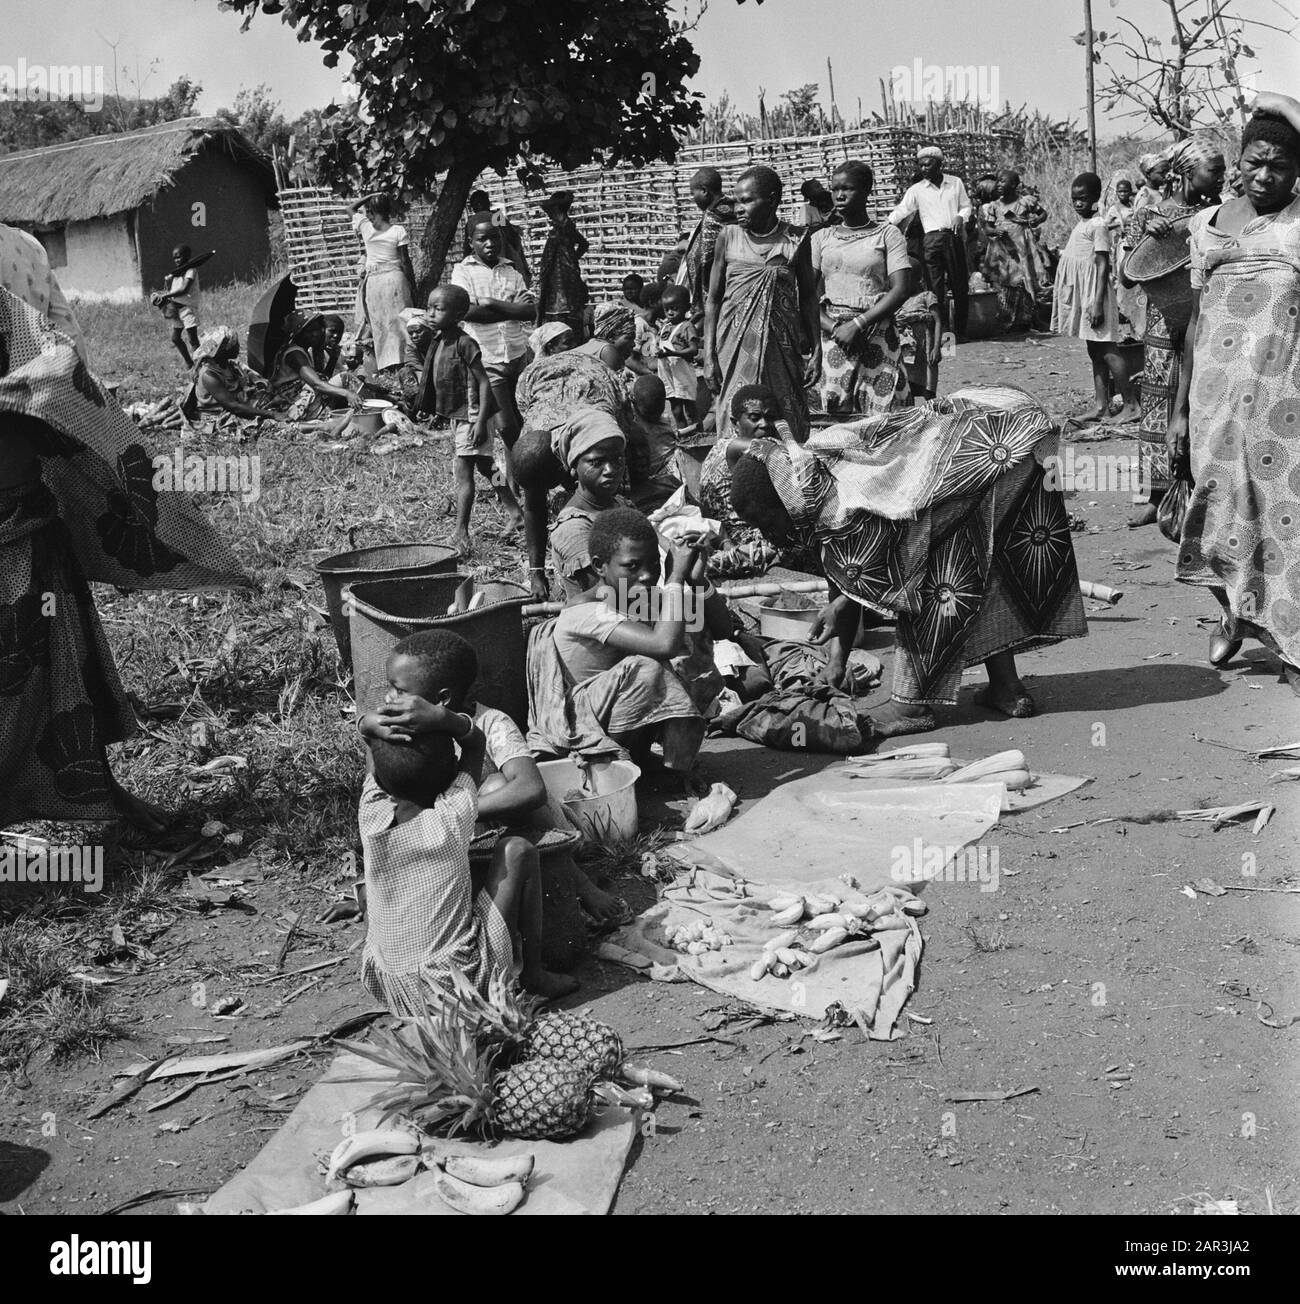 Zaire (früher Belgischer Kongo) Menschen lange die Seite einer Straße Datum: 24. Oktober 1973 Ort: Kongo, Zaire Schlüsselwörter: Ananas, Straßenhandel, Straßenränder, Straßen Stockfoto